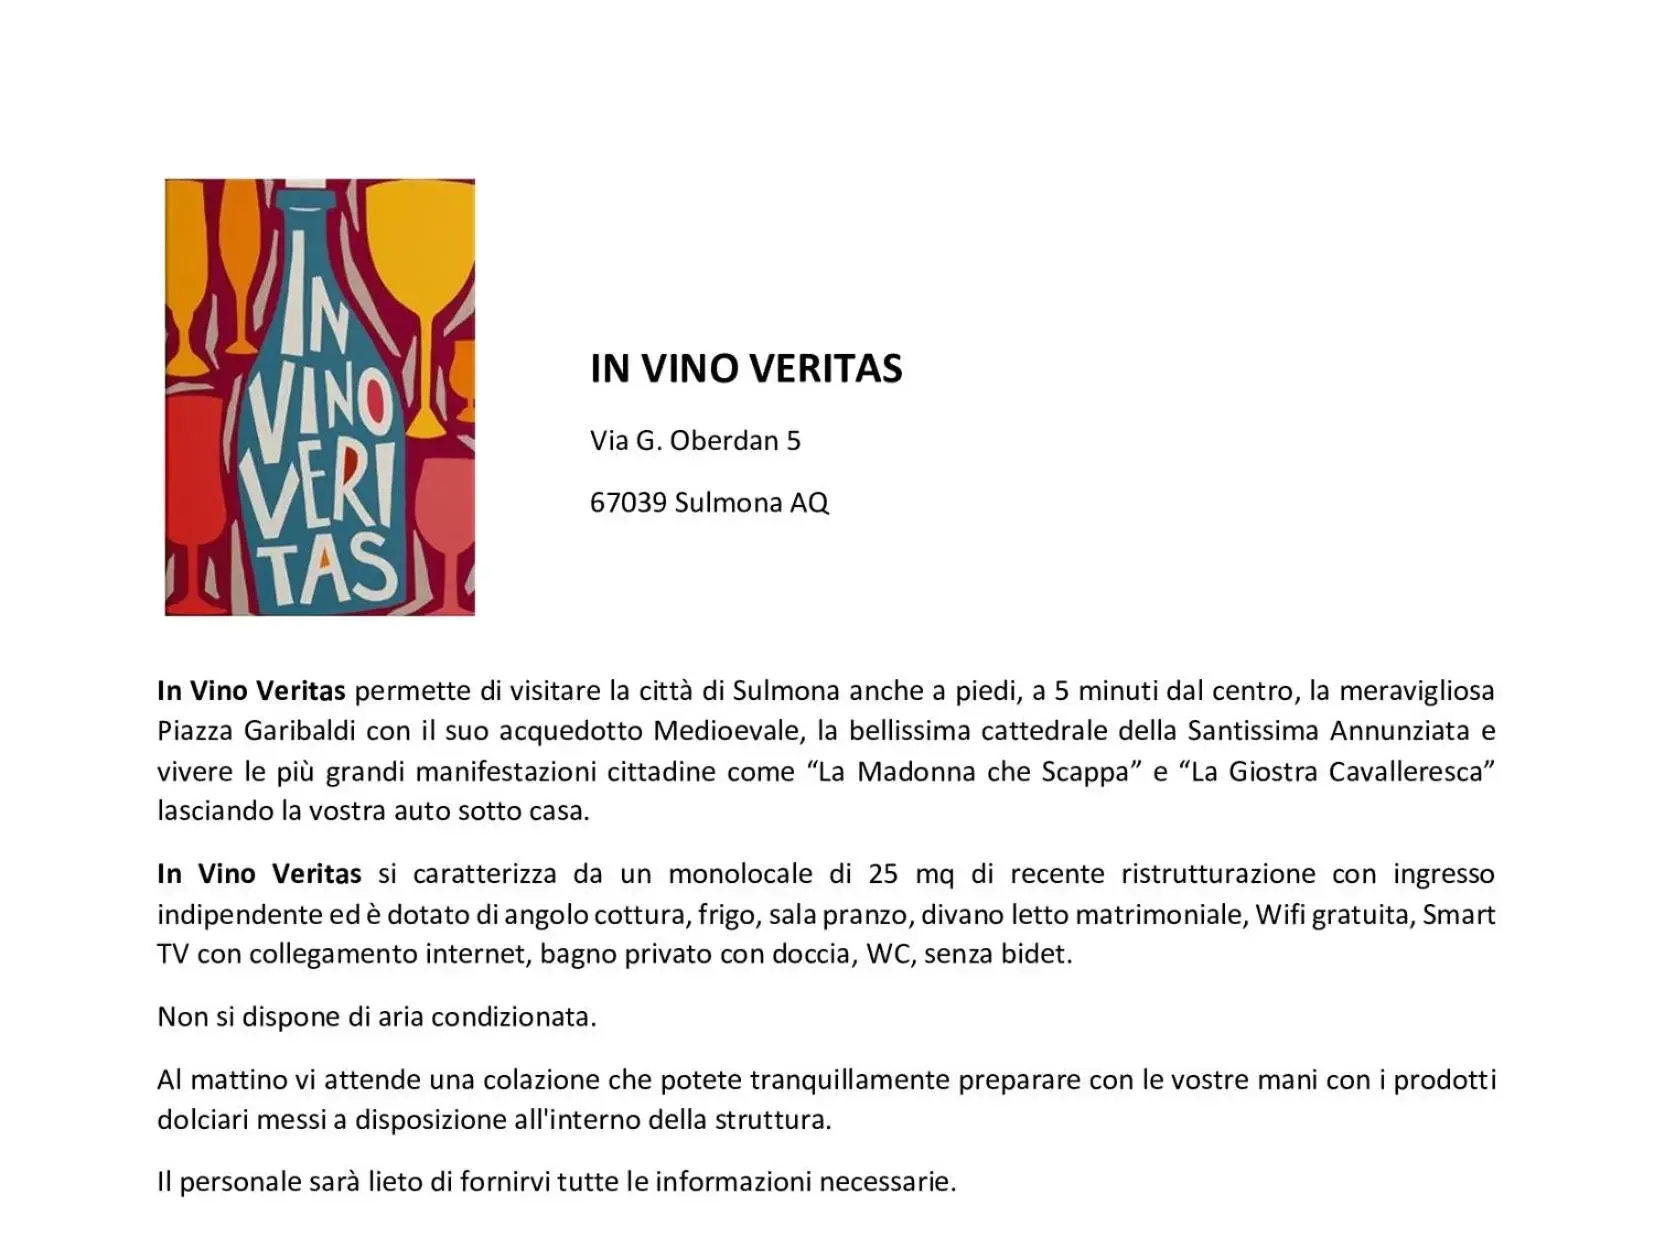 Text overlay in In Vino Veritas